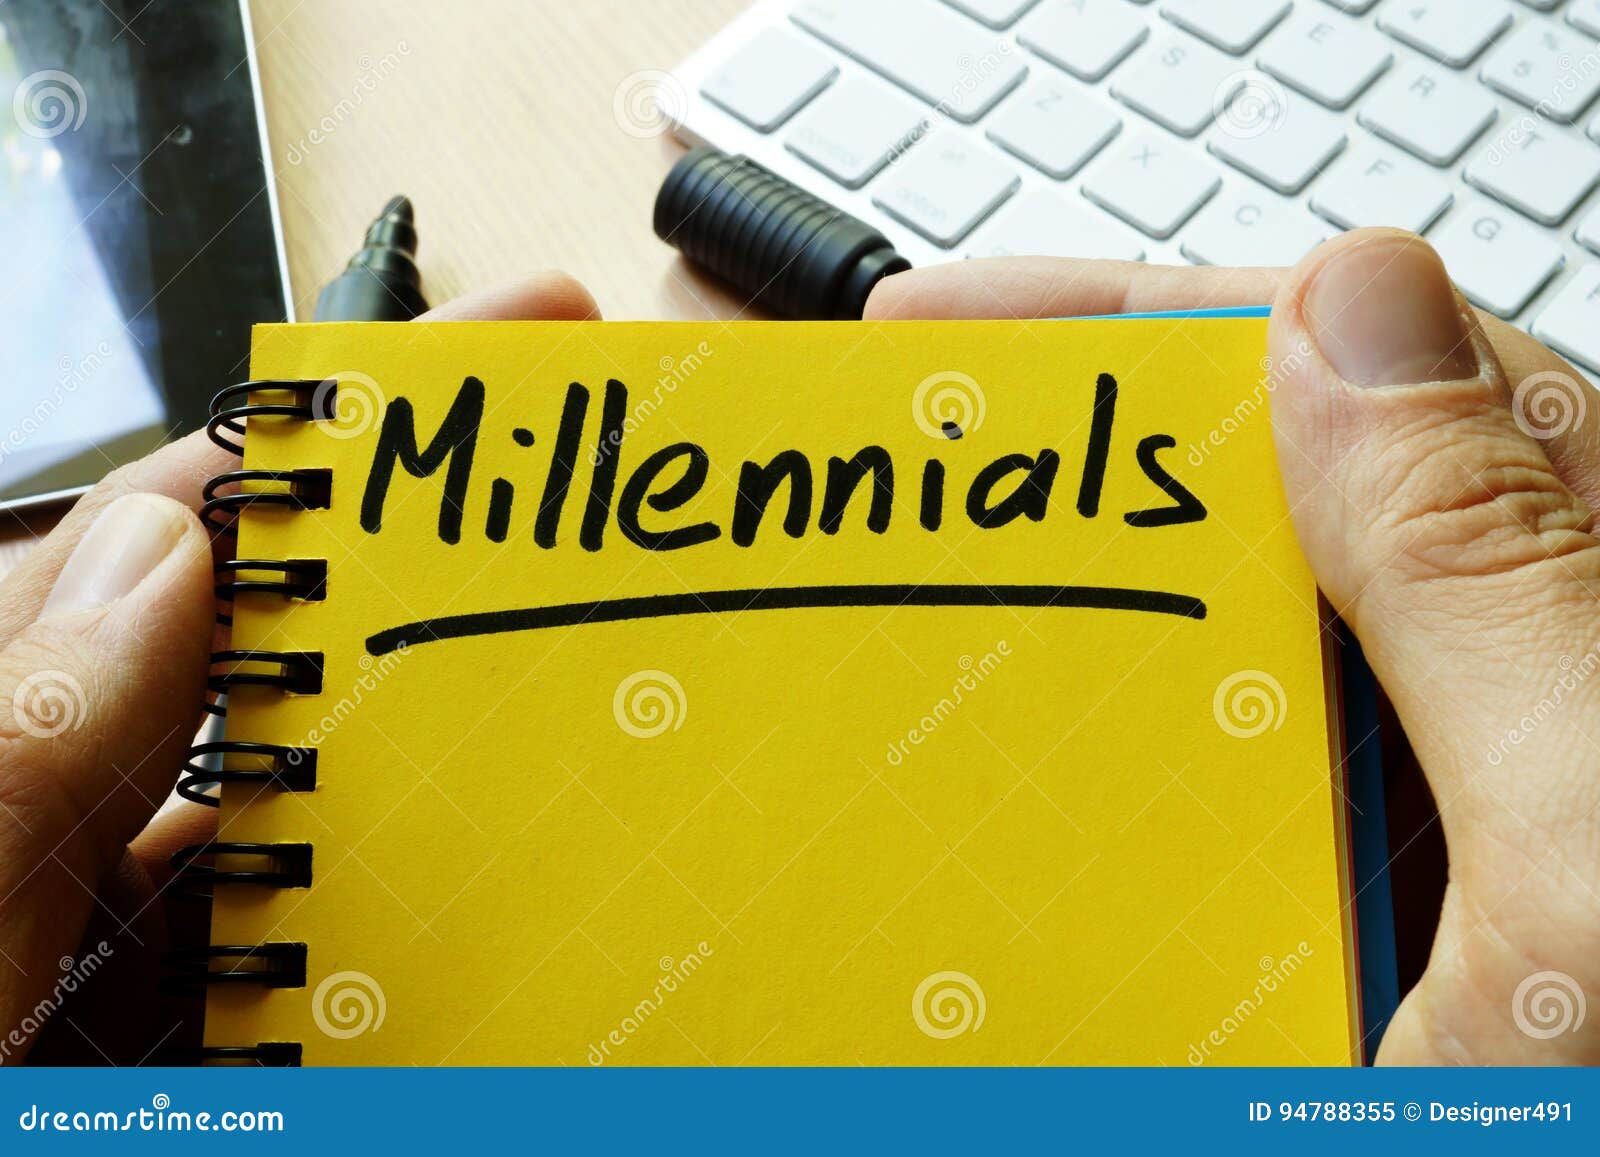 millennials.